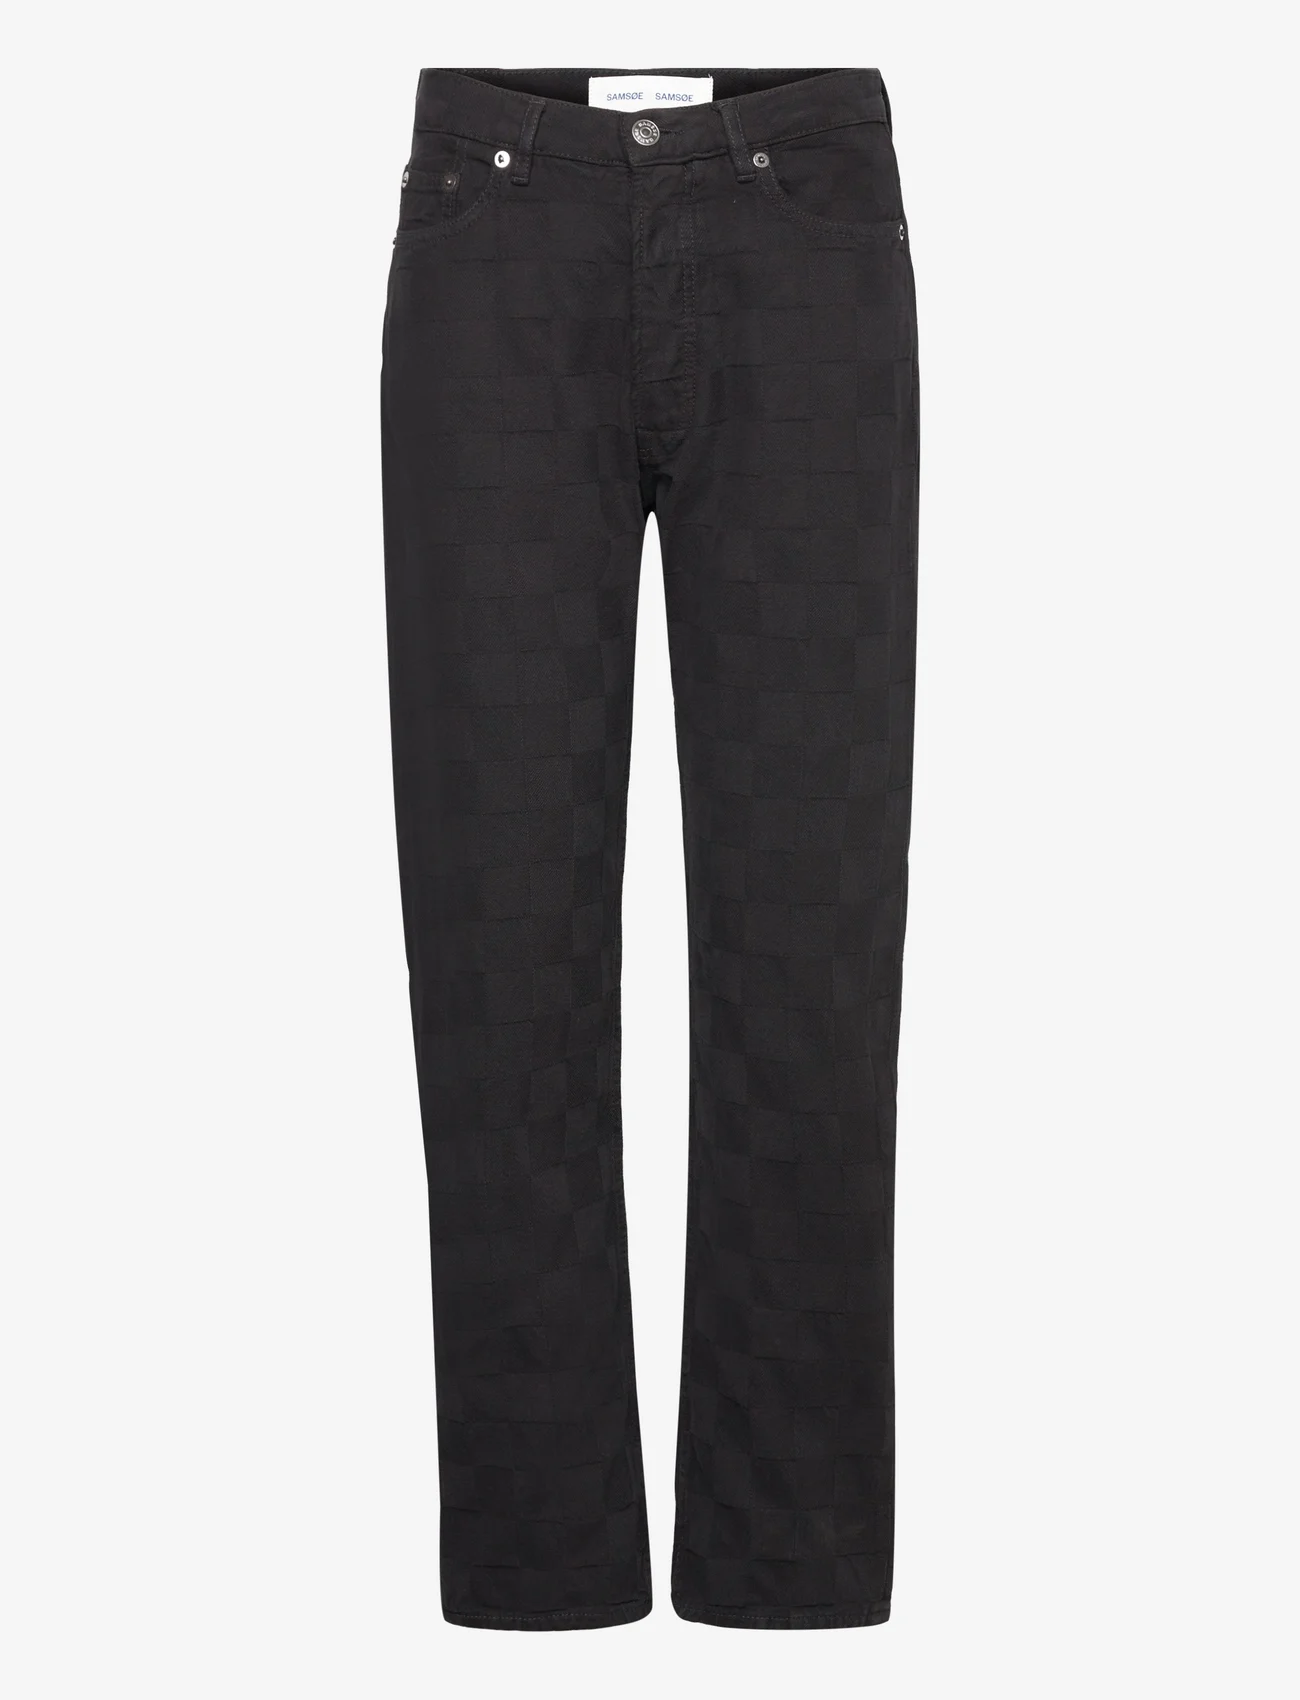 Samsøe Samsøe - Susan jeans 14956 - straight jeans - black od check - 0